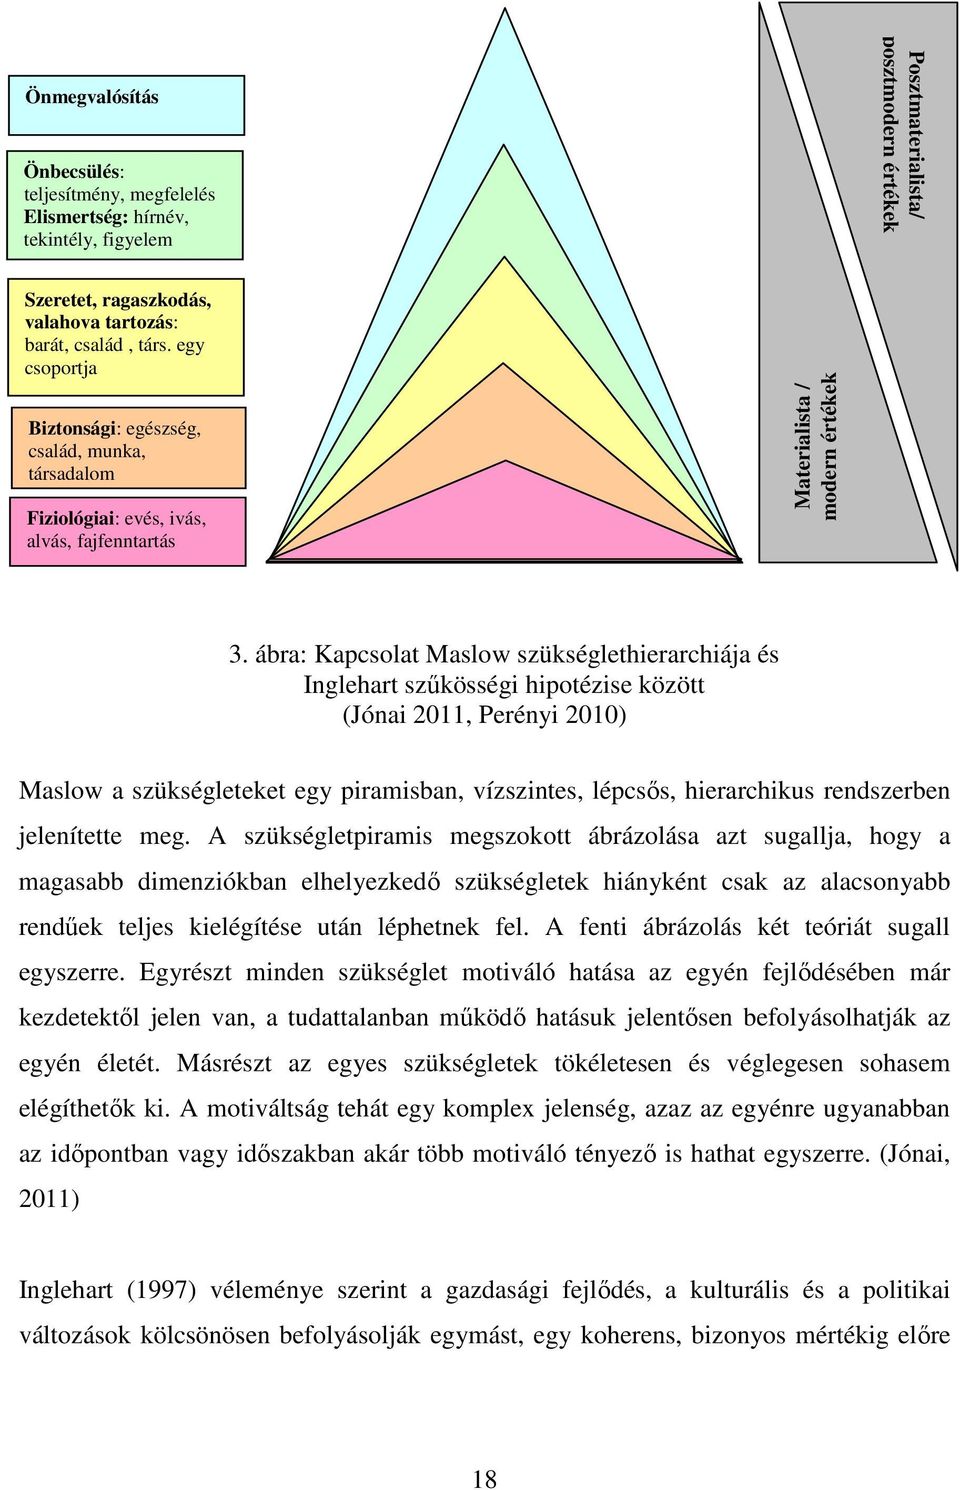 ábra: Kapcsolat Maslow szükséglethierarchiája és Inglehart szűkösségi hipotézise között (Jónai 2011, Perényi 2010) Maslow a szükségleteket egy piramisban, vízszintes, lépcsős, hierarchikus